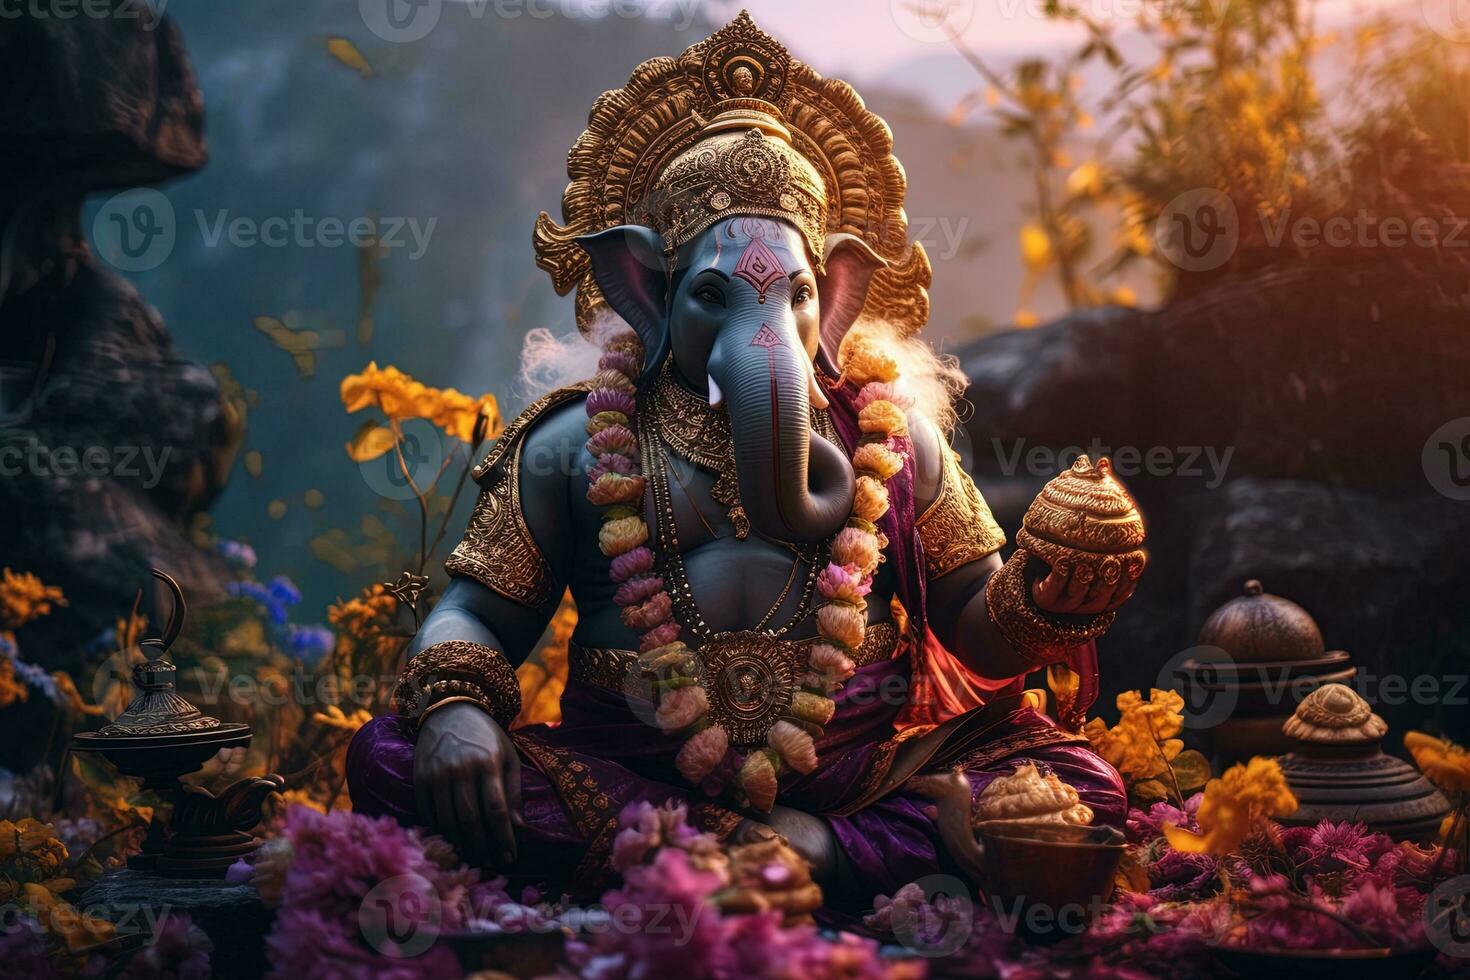 Hindu God Ganesha with flowers AI generated photo